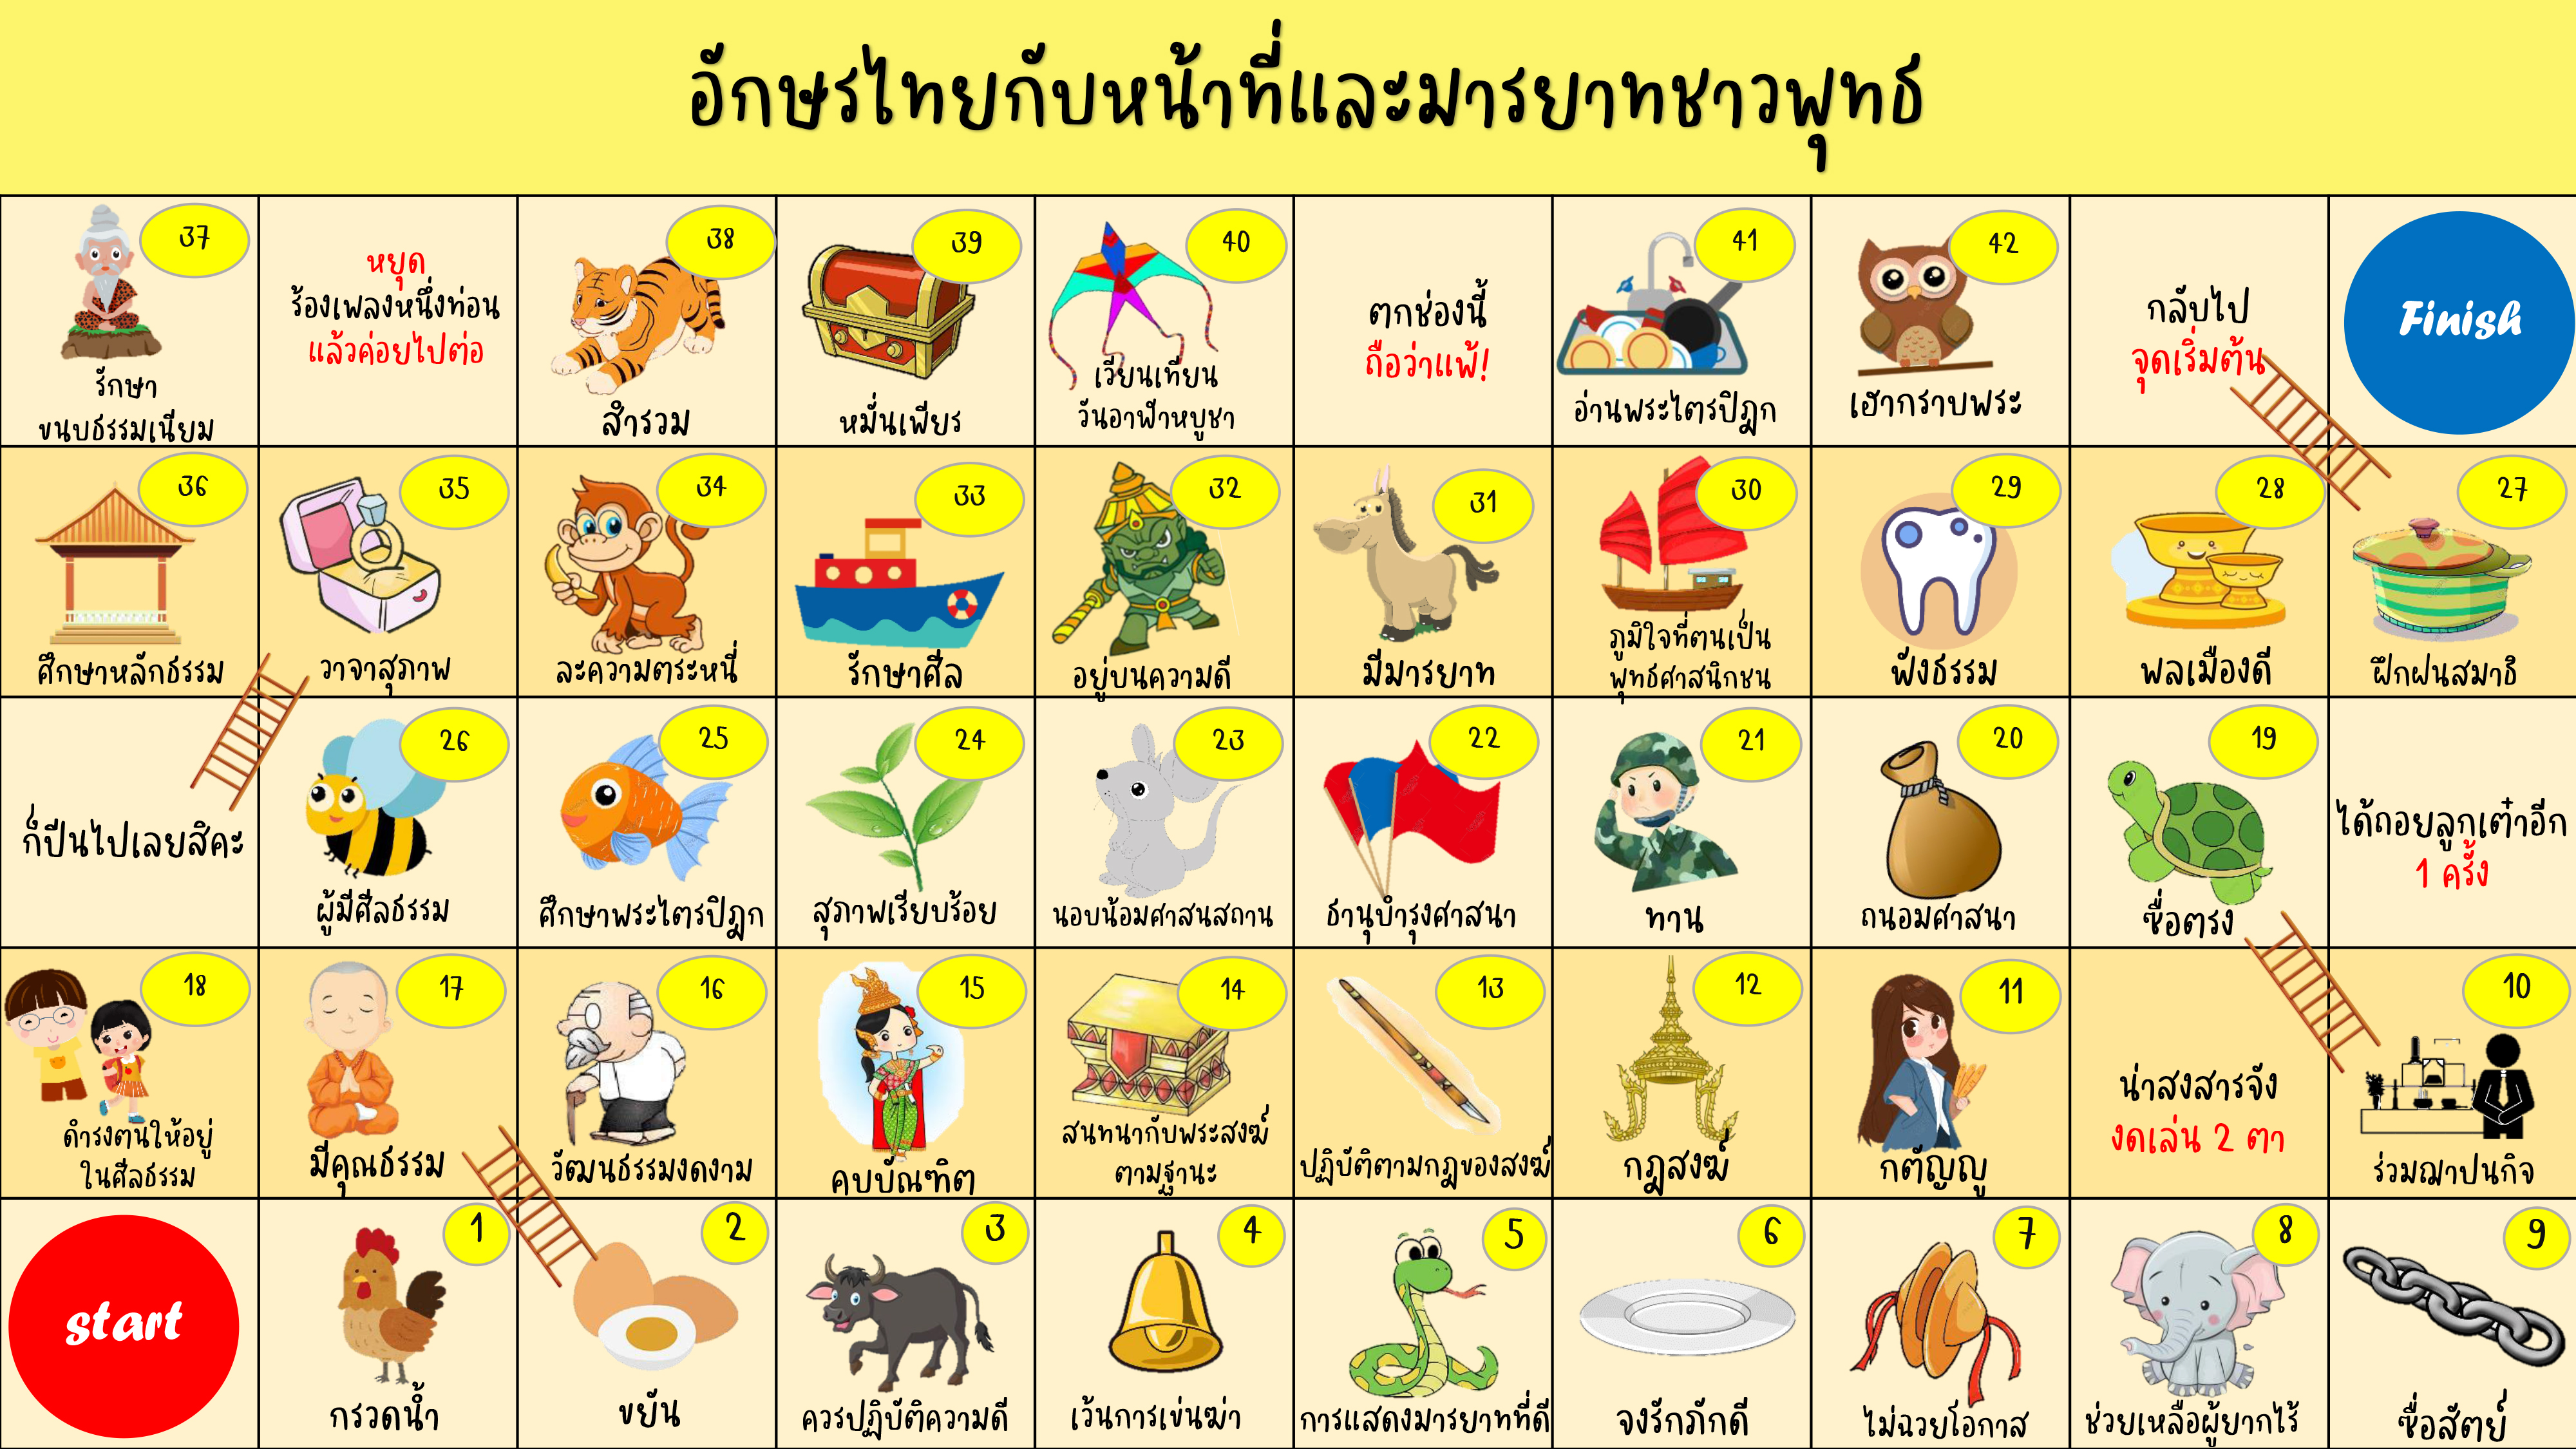 ภาพประกอบไอเดีย อักษรไทยกับหน้าที่และมารยาท(ชาวพุทธ) Ver. Online